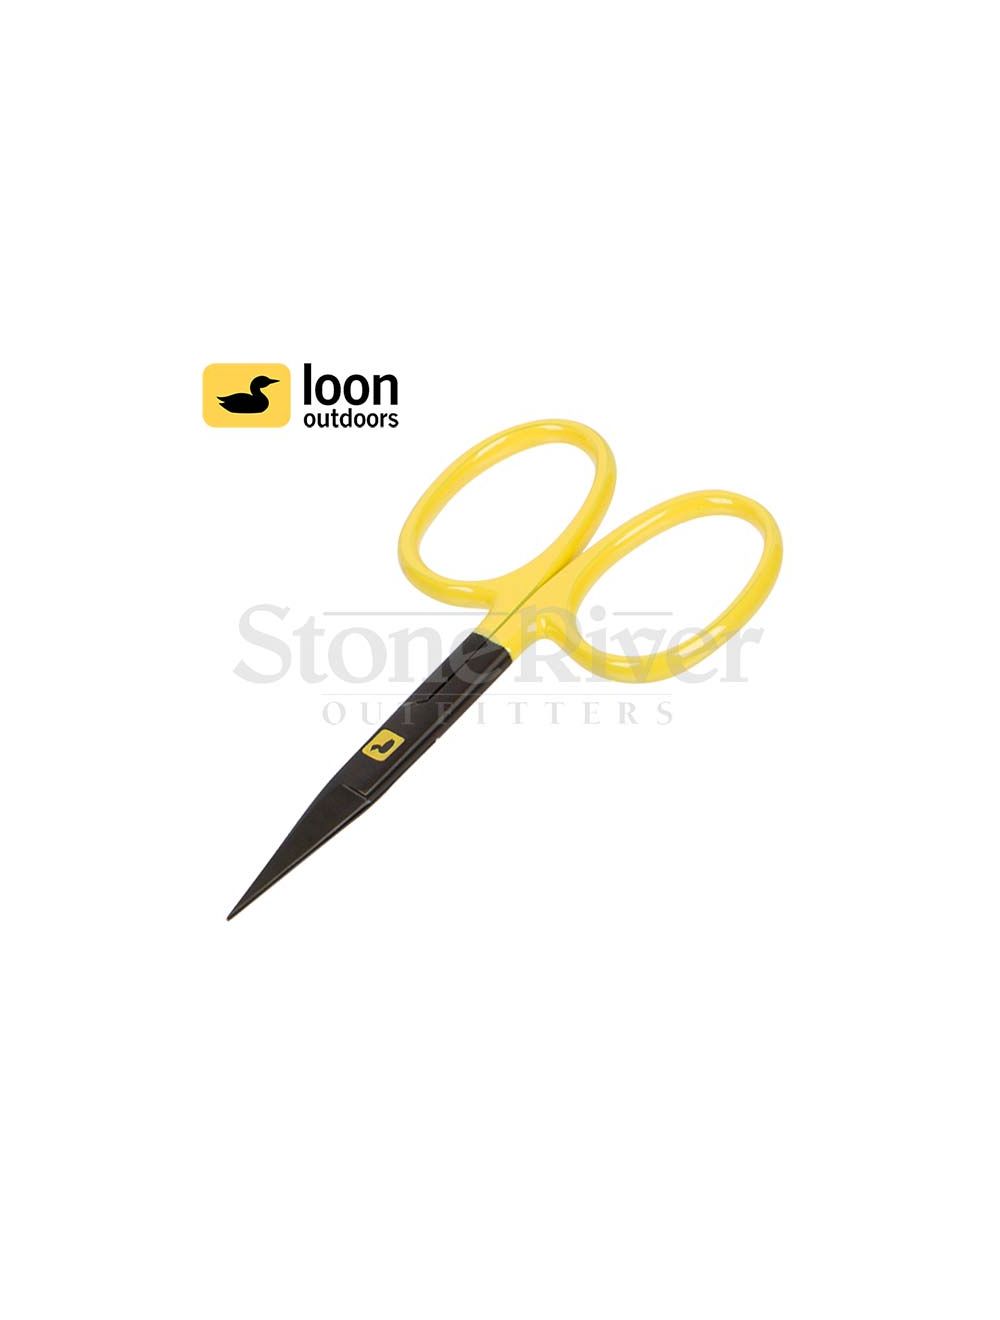 Loon Ergo All-Purpose Scissors (F0978)